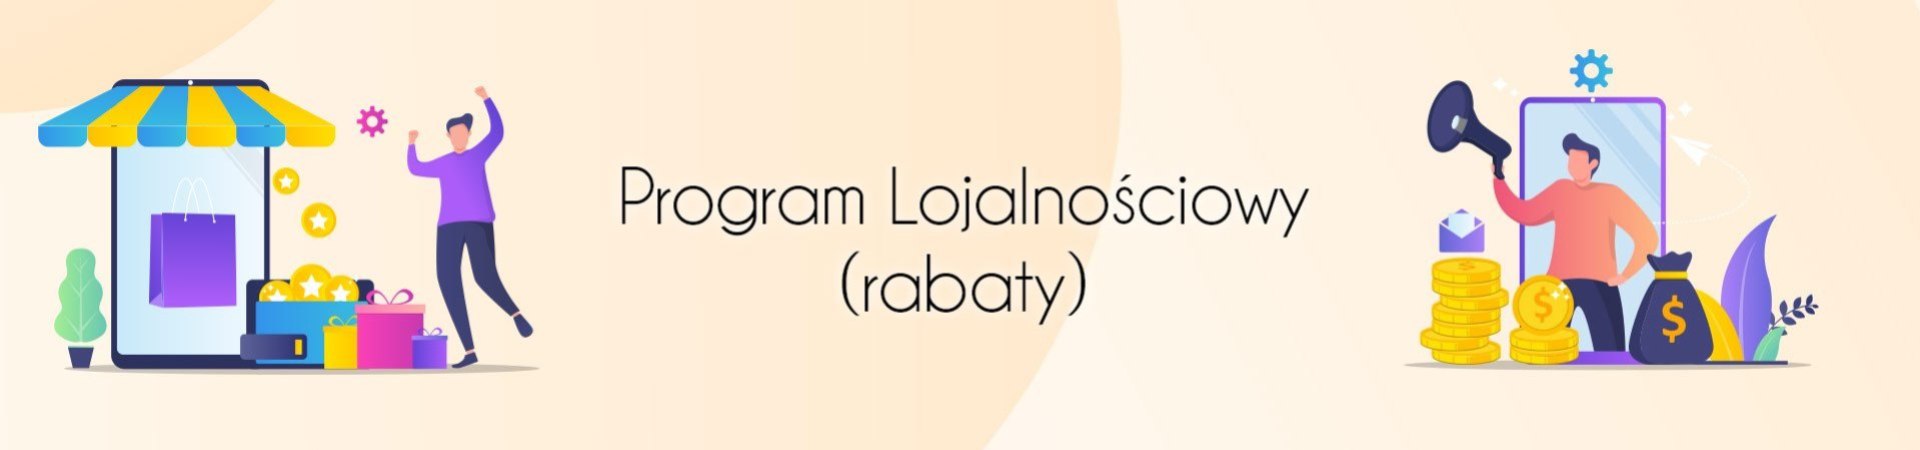 1920x450-program-lojalnosciowy-01_cropped(1)